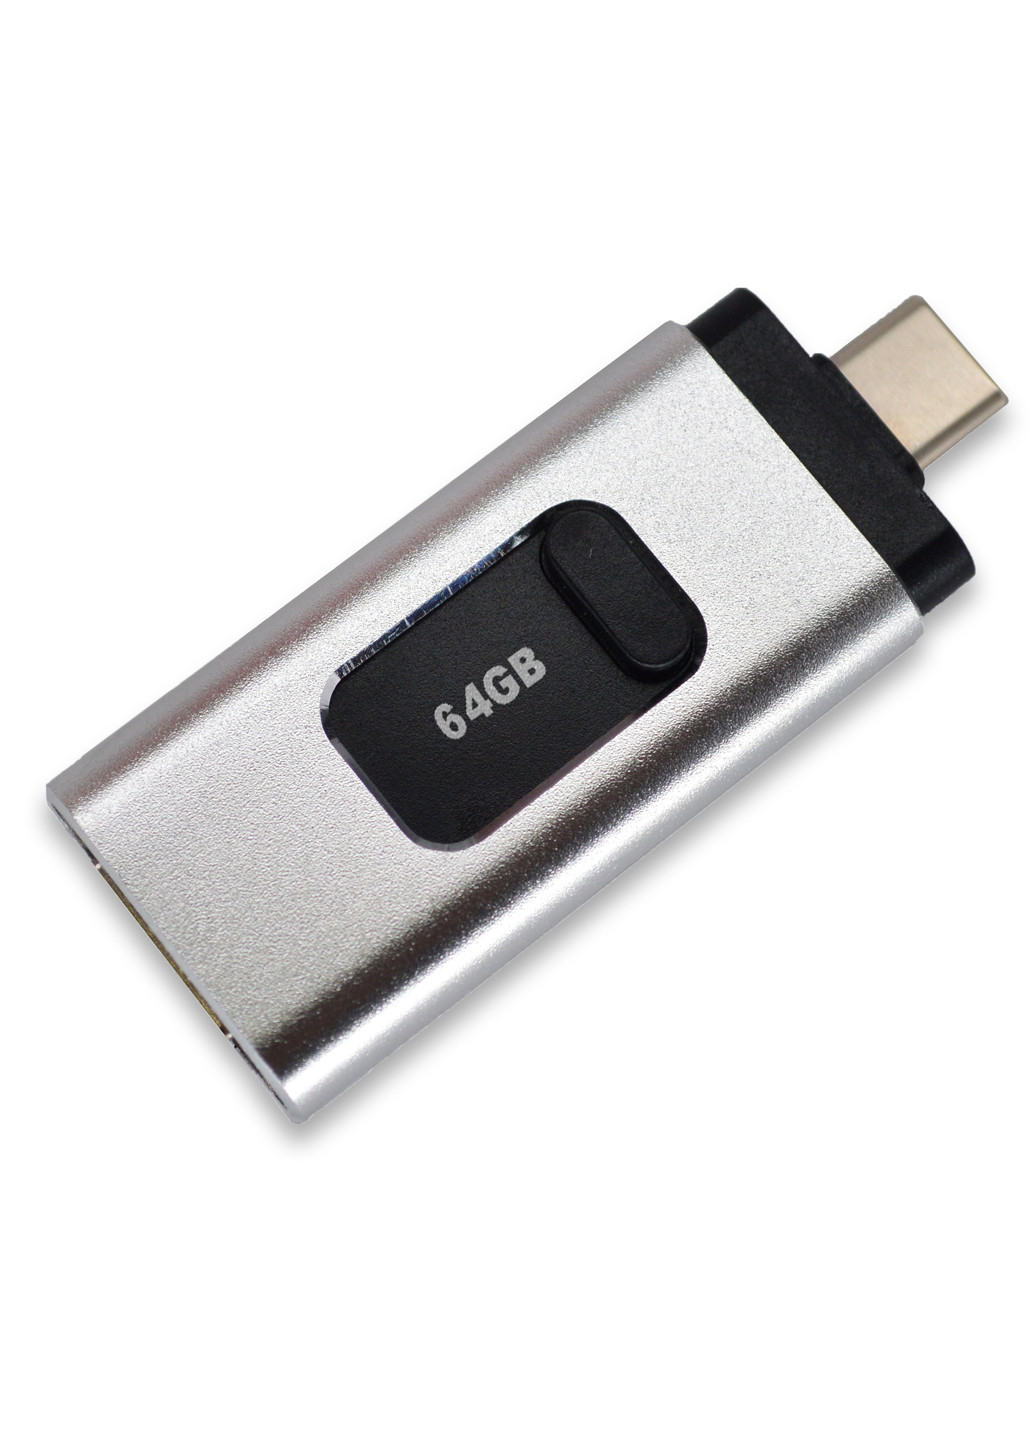 Флешка для iPhone MacBook PC flash drive 64 GB 3 в 1 USB 3.0 / Type-C / Lightning (BLKFL16) Beluck FL64 серебряные